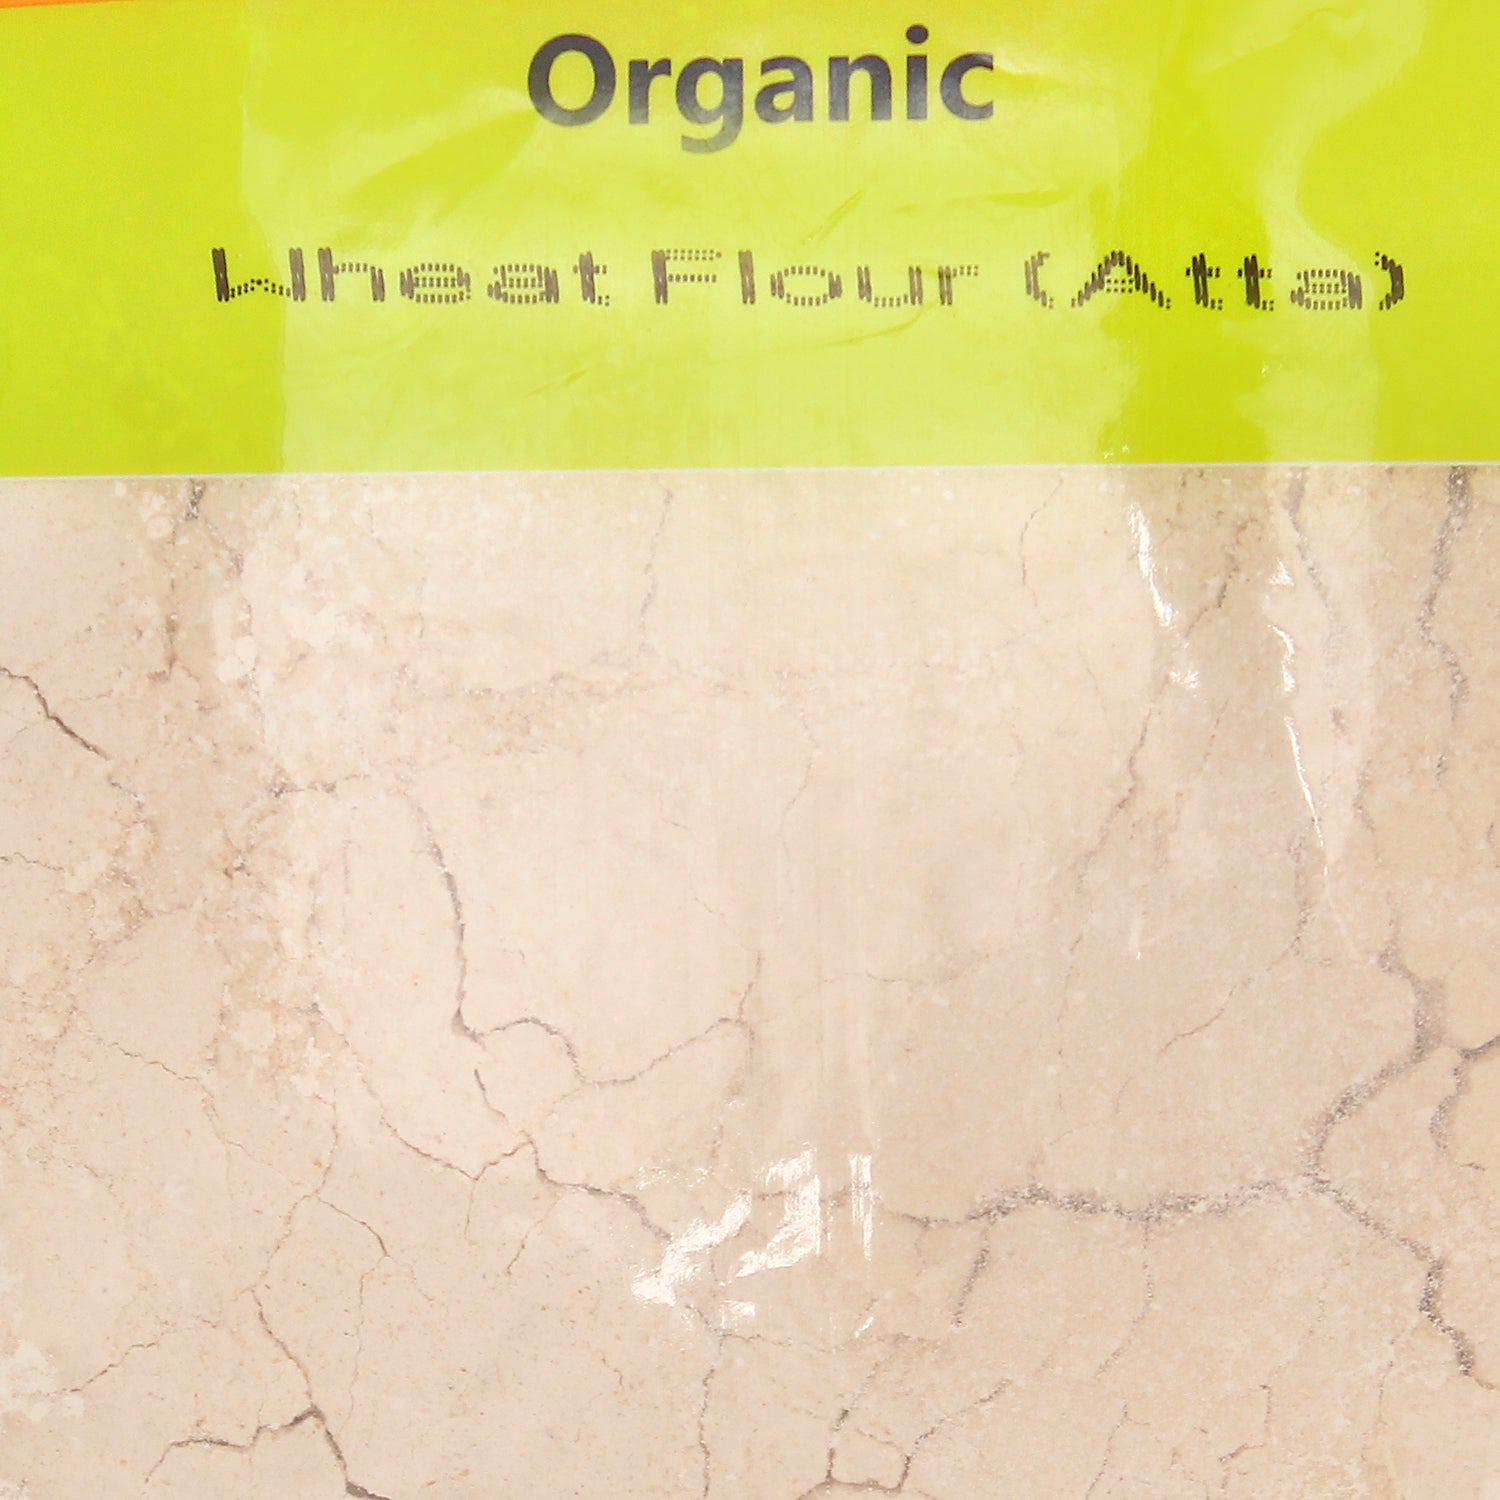 Organic Wheat Flour Atta, Organic Atta, Atta,  Organic Wheat flour